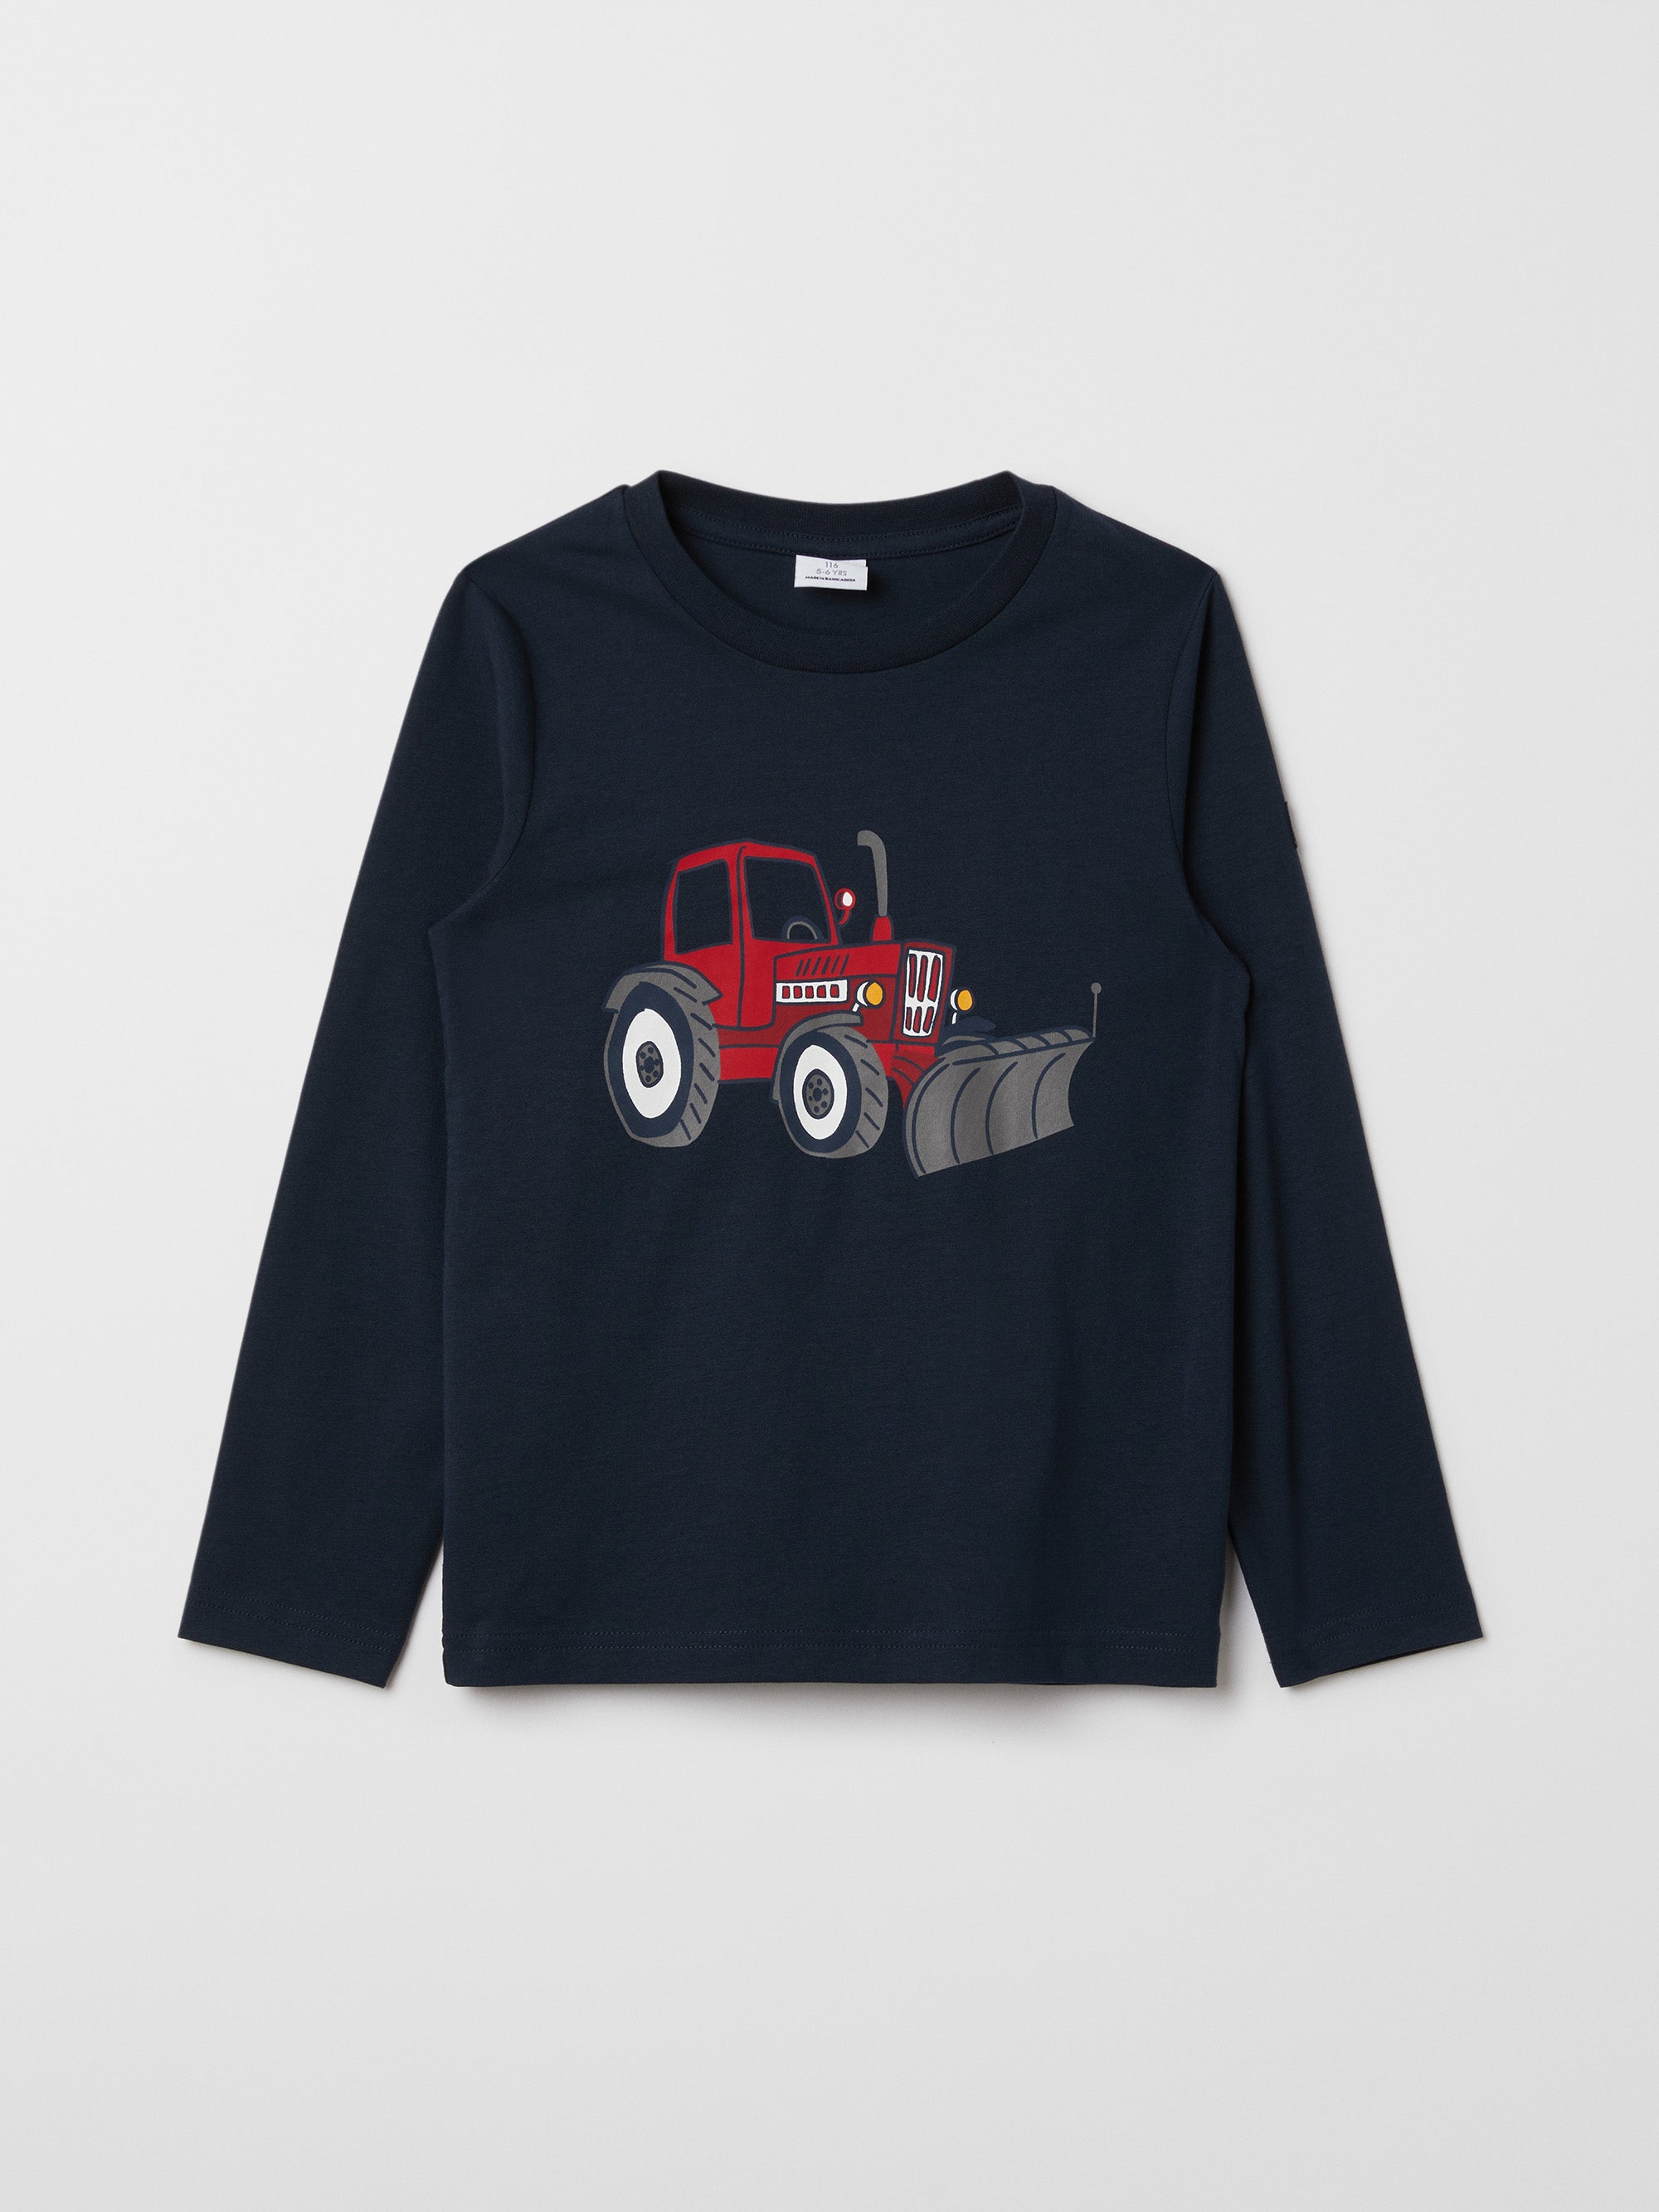 Tractor Print Kids Top